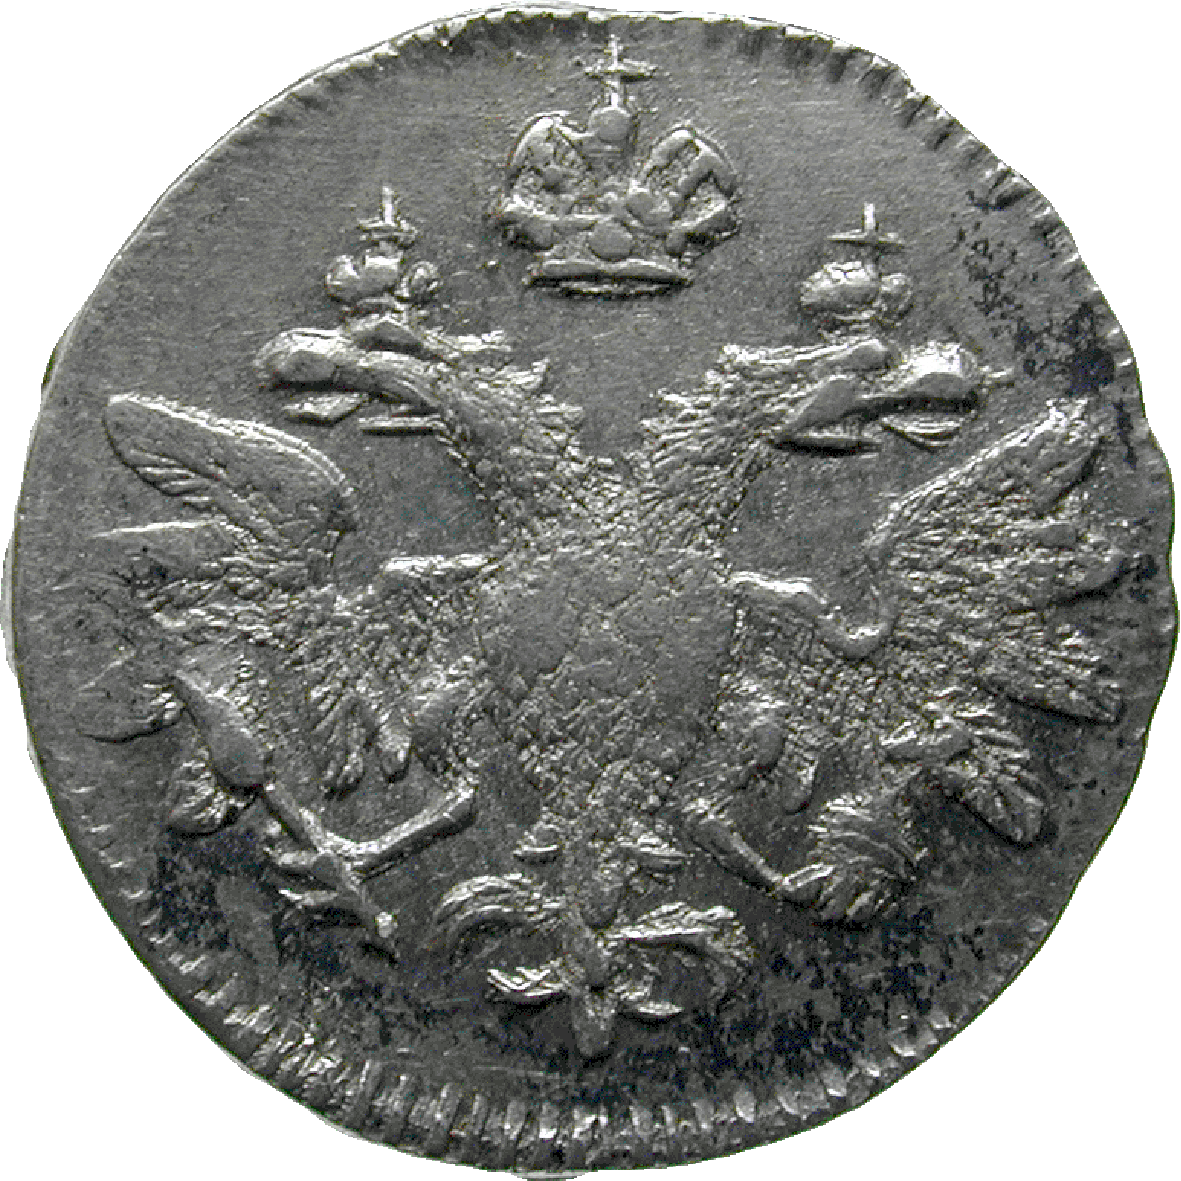 Zarenreich Russland, Peter I. der Grosse, Altyn 1712 (obverse)